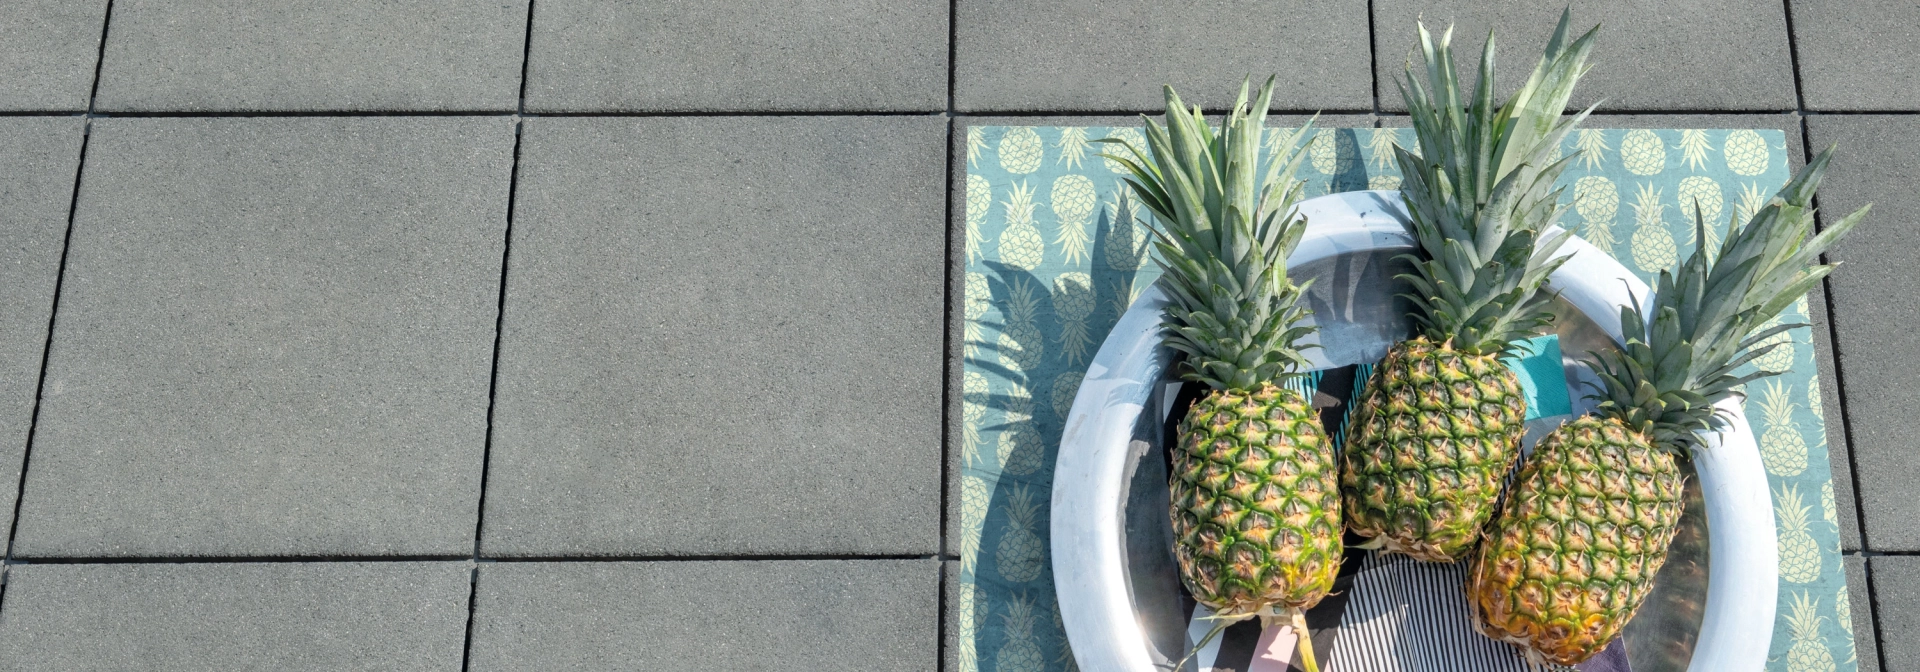 Drei Ananas liegen auf grauen Terrassenplatten